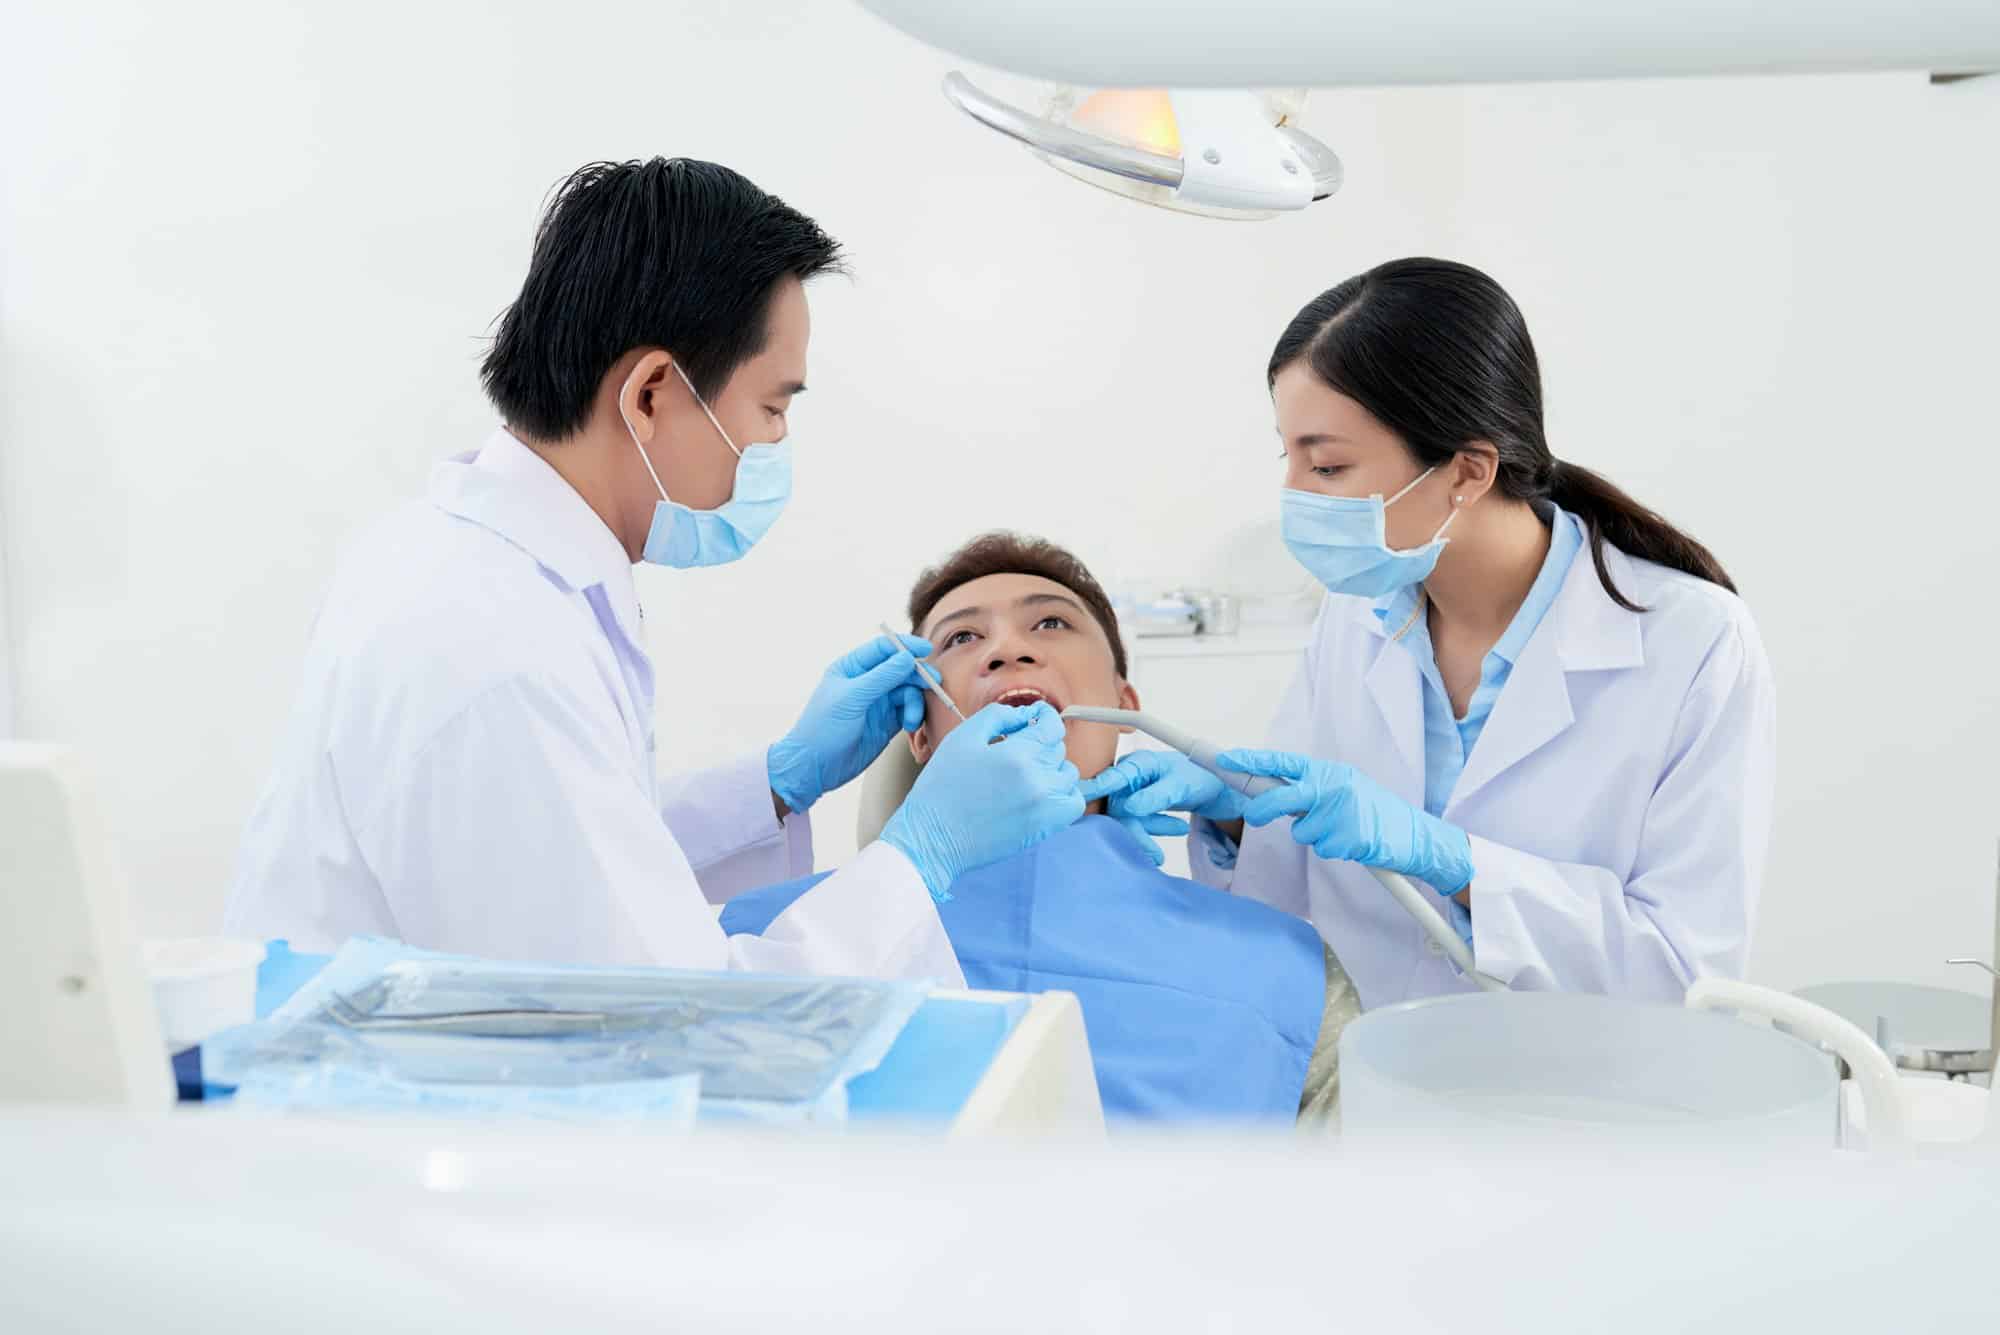 Comment les centres dentaires abordent-ils la santé bucco-dentaire globale ?